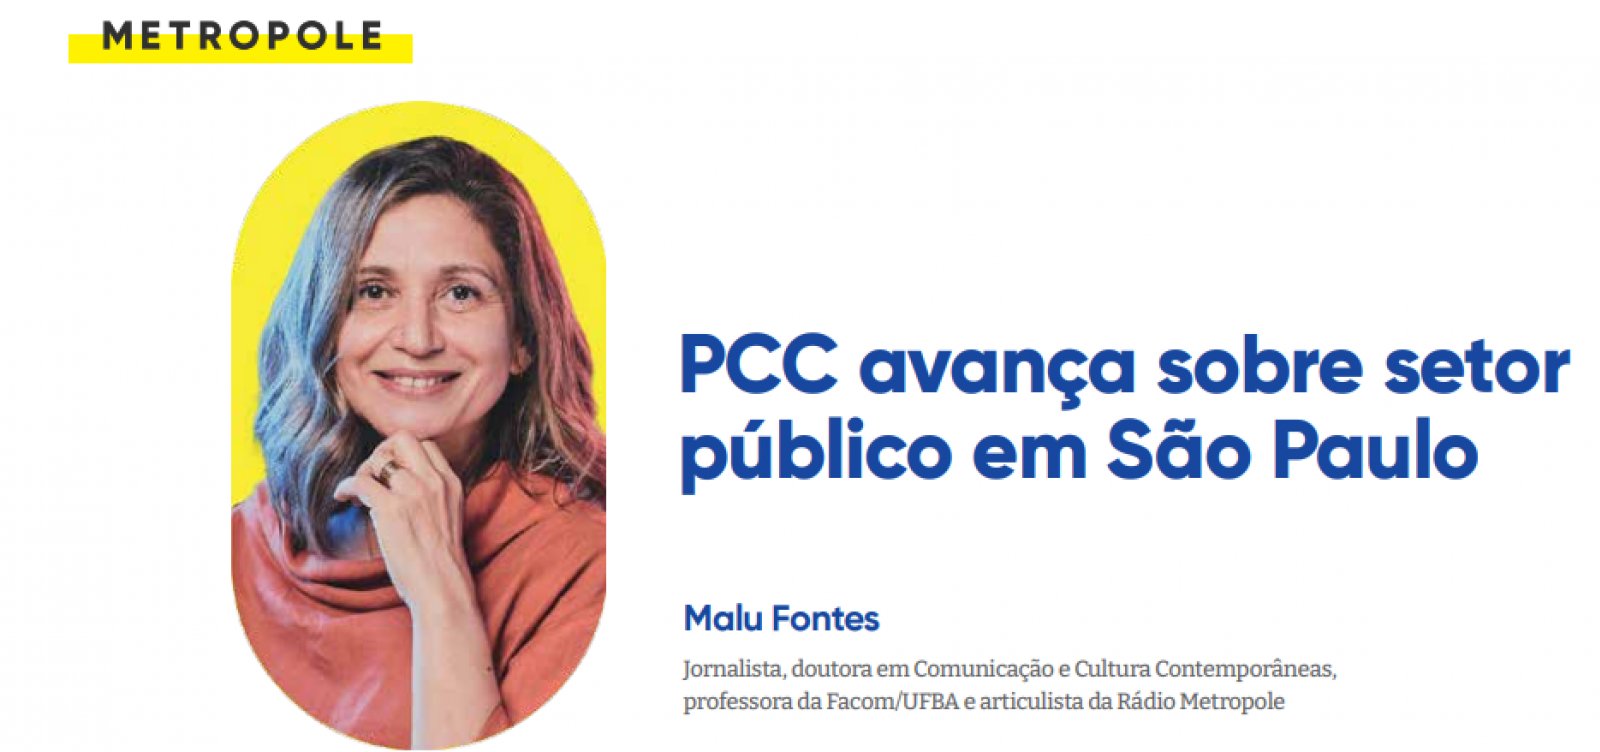 PCC avança sobre setor público em São Paulo